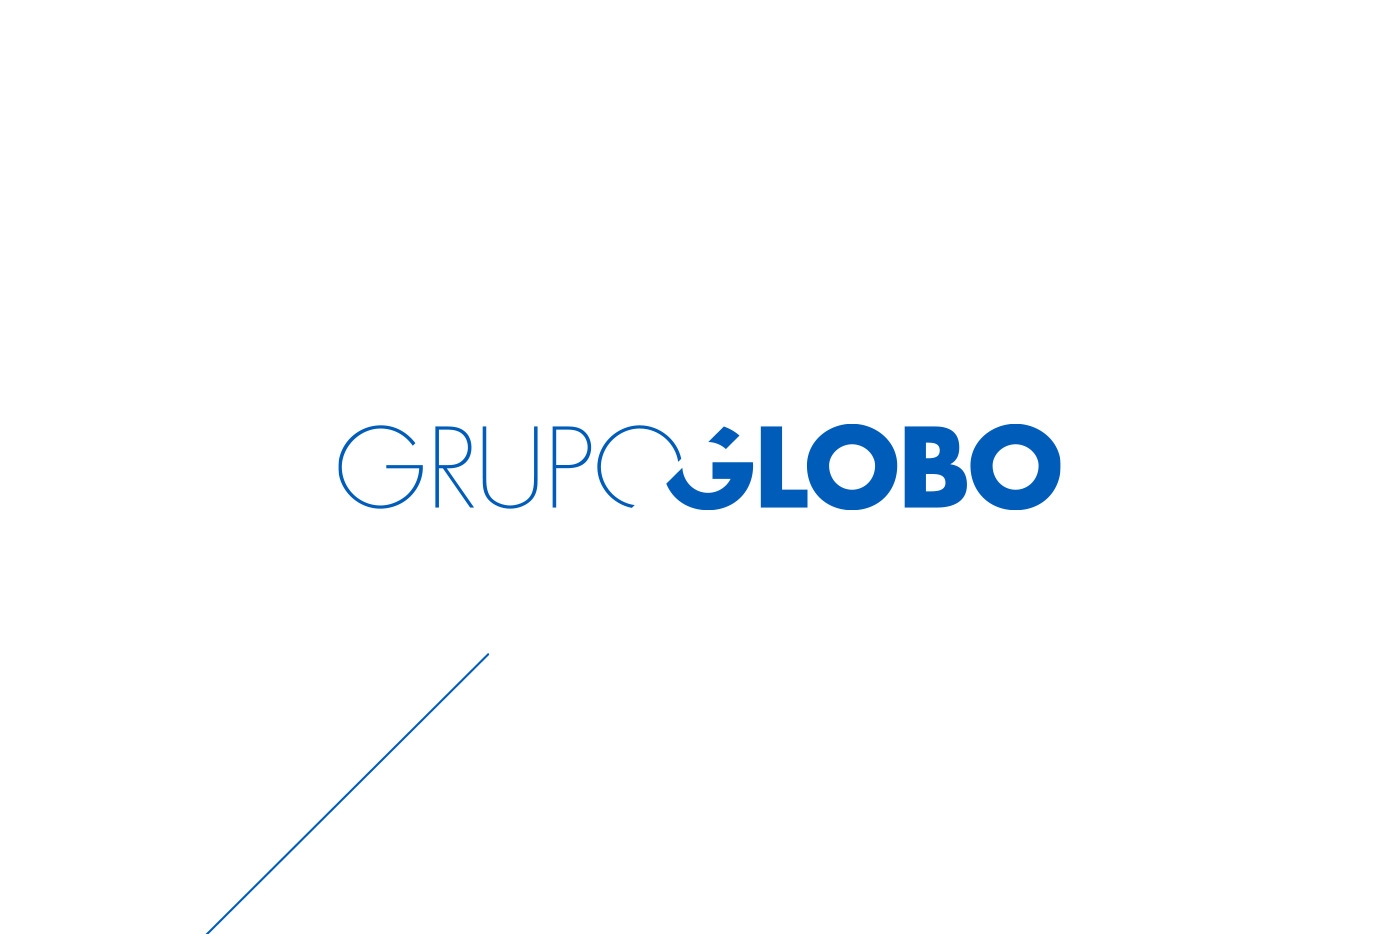 Grupo Globo